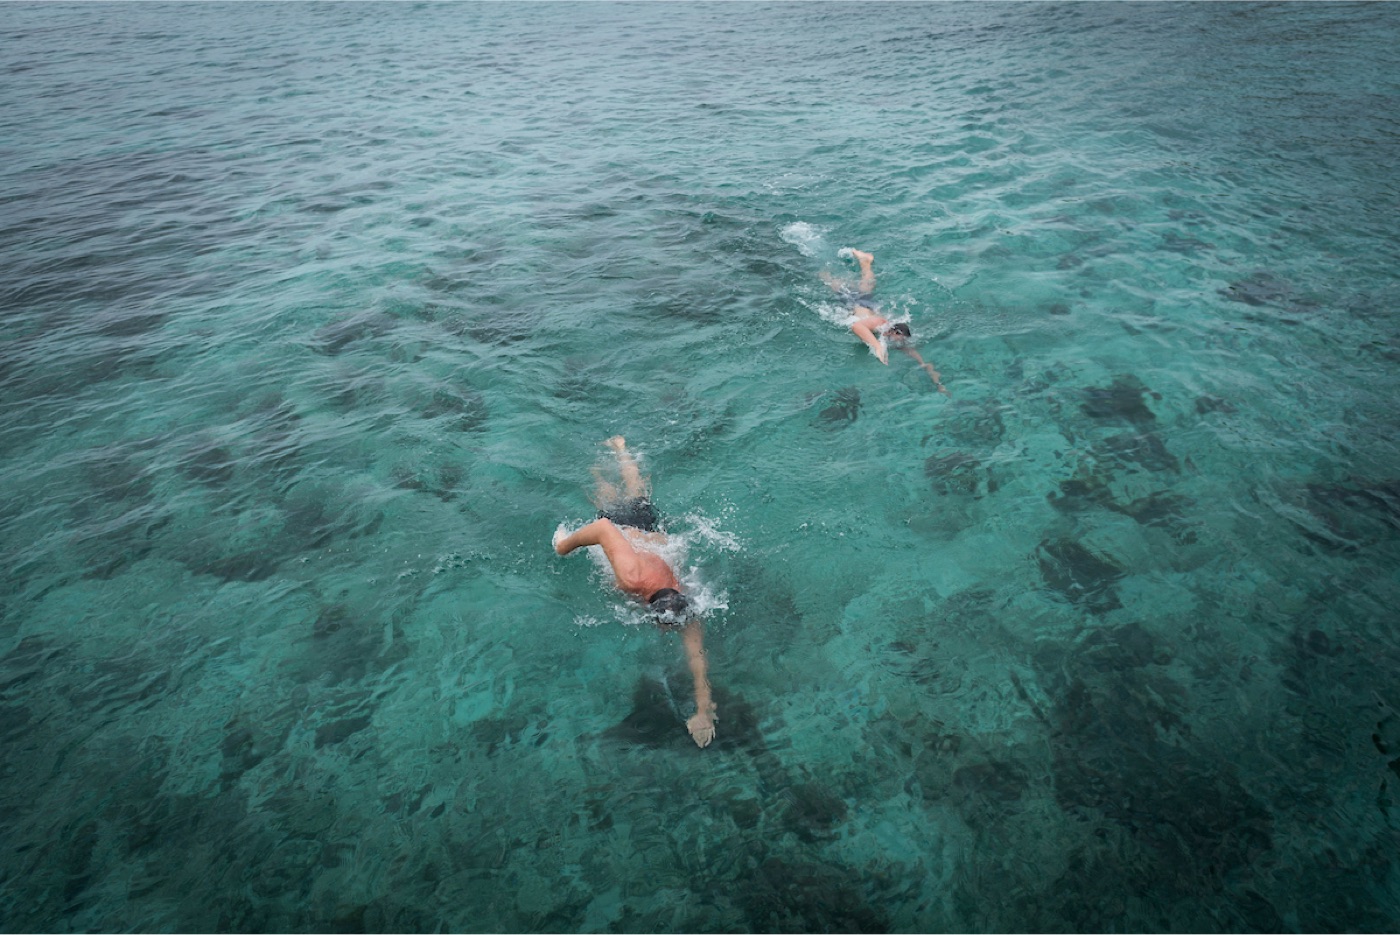 Ocean Swim Fiji - Blog - Shane Gould returns to Ocean Swim Fiji!